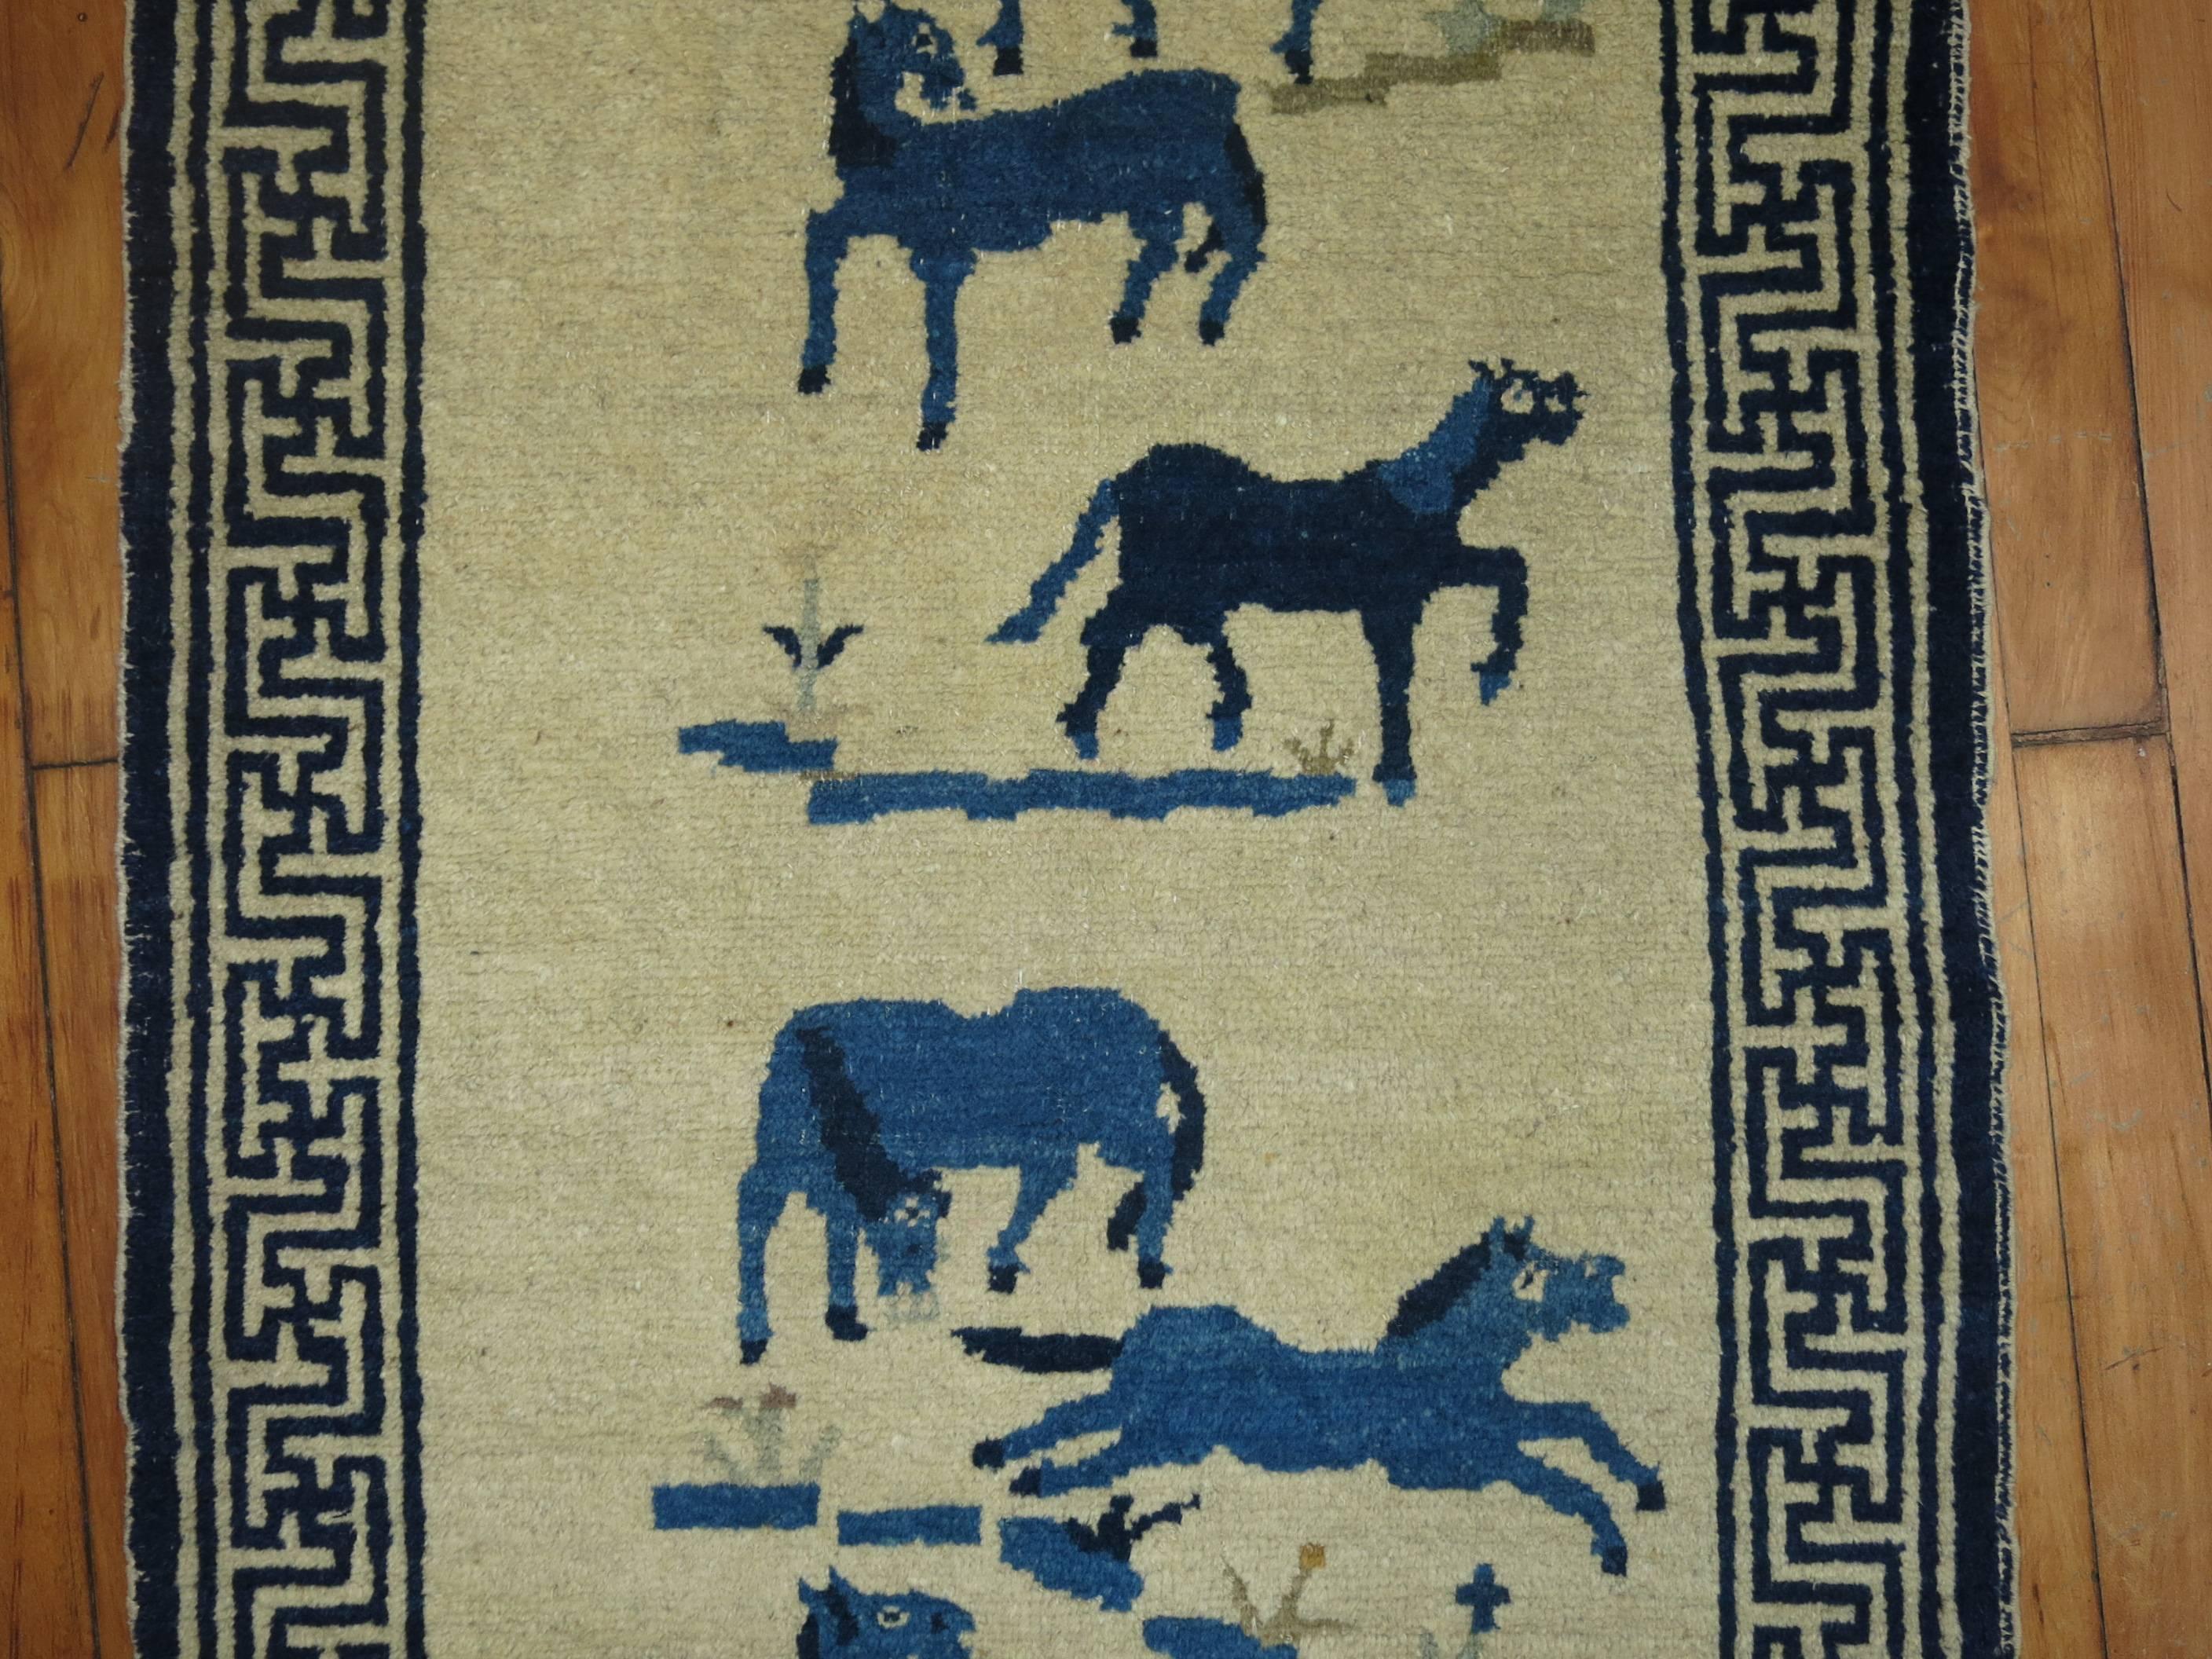 Un tapis chinois pictural pour chevaux du début du 20ème siècle. Six chevaux bleus flockés sur un fond de couleur ivoire.

2'2